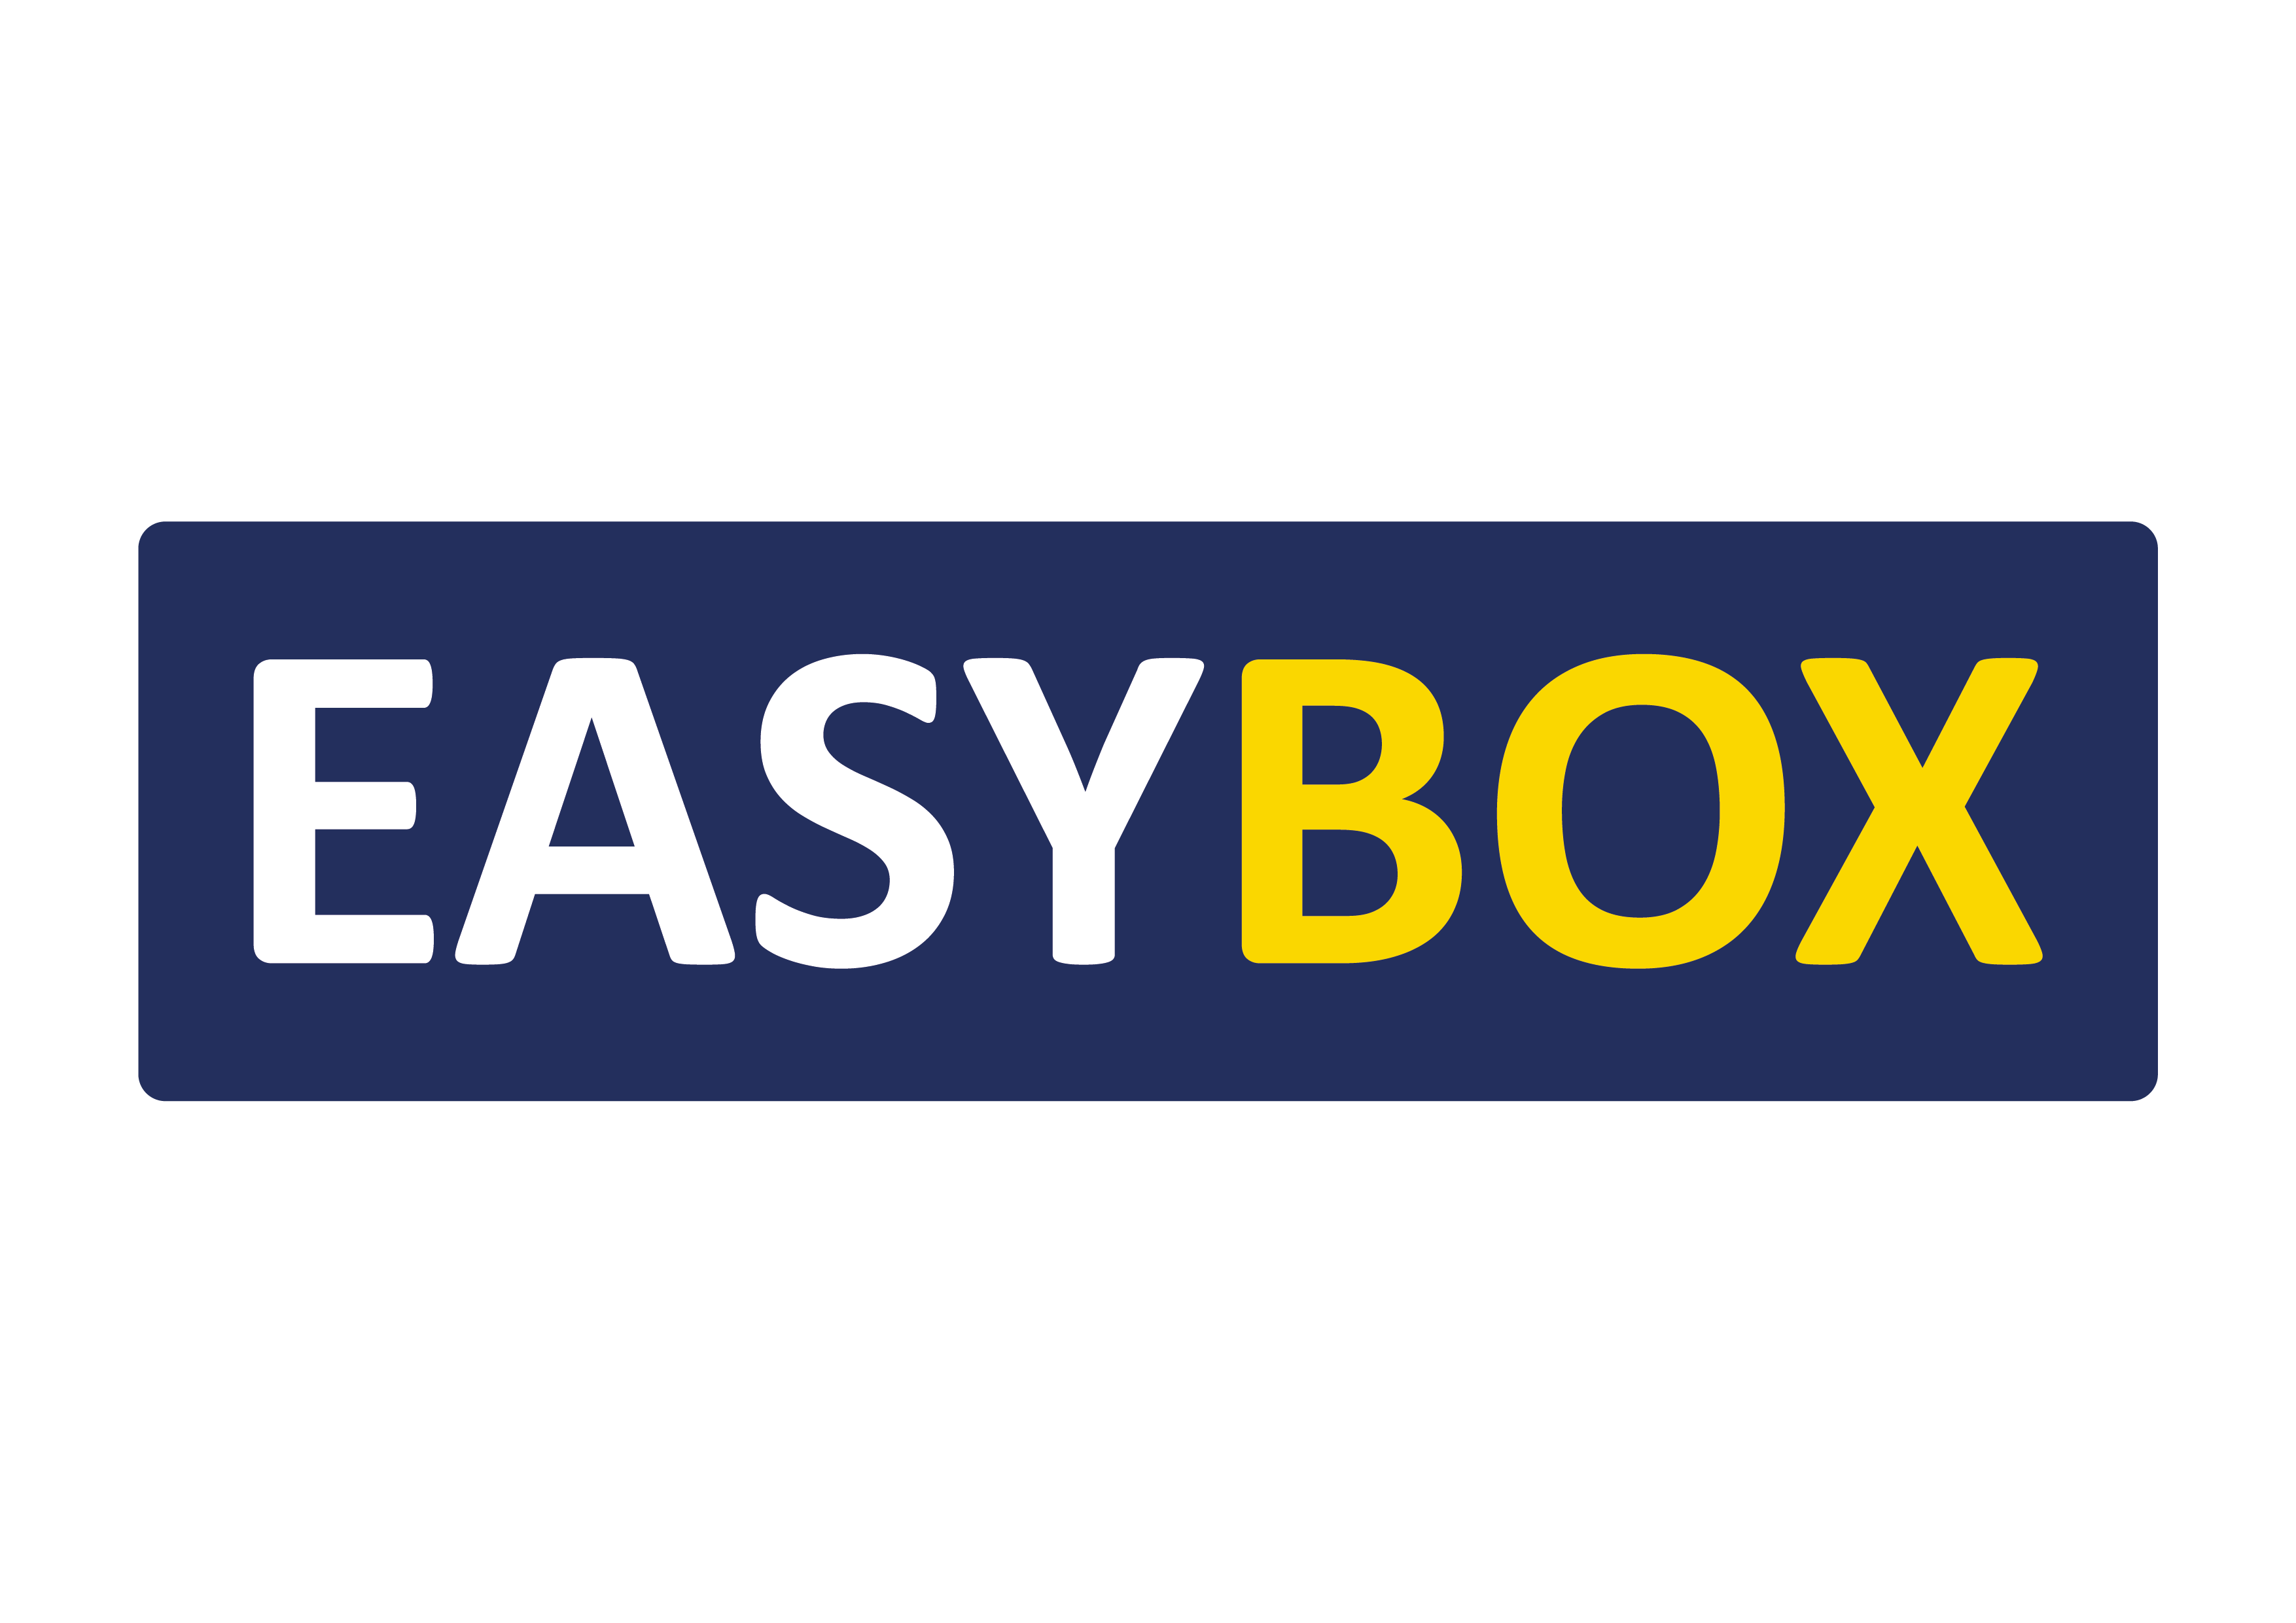 EasyBox corre per la Casa della Carità-Easybox Selfstorage Srl